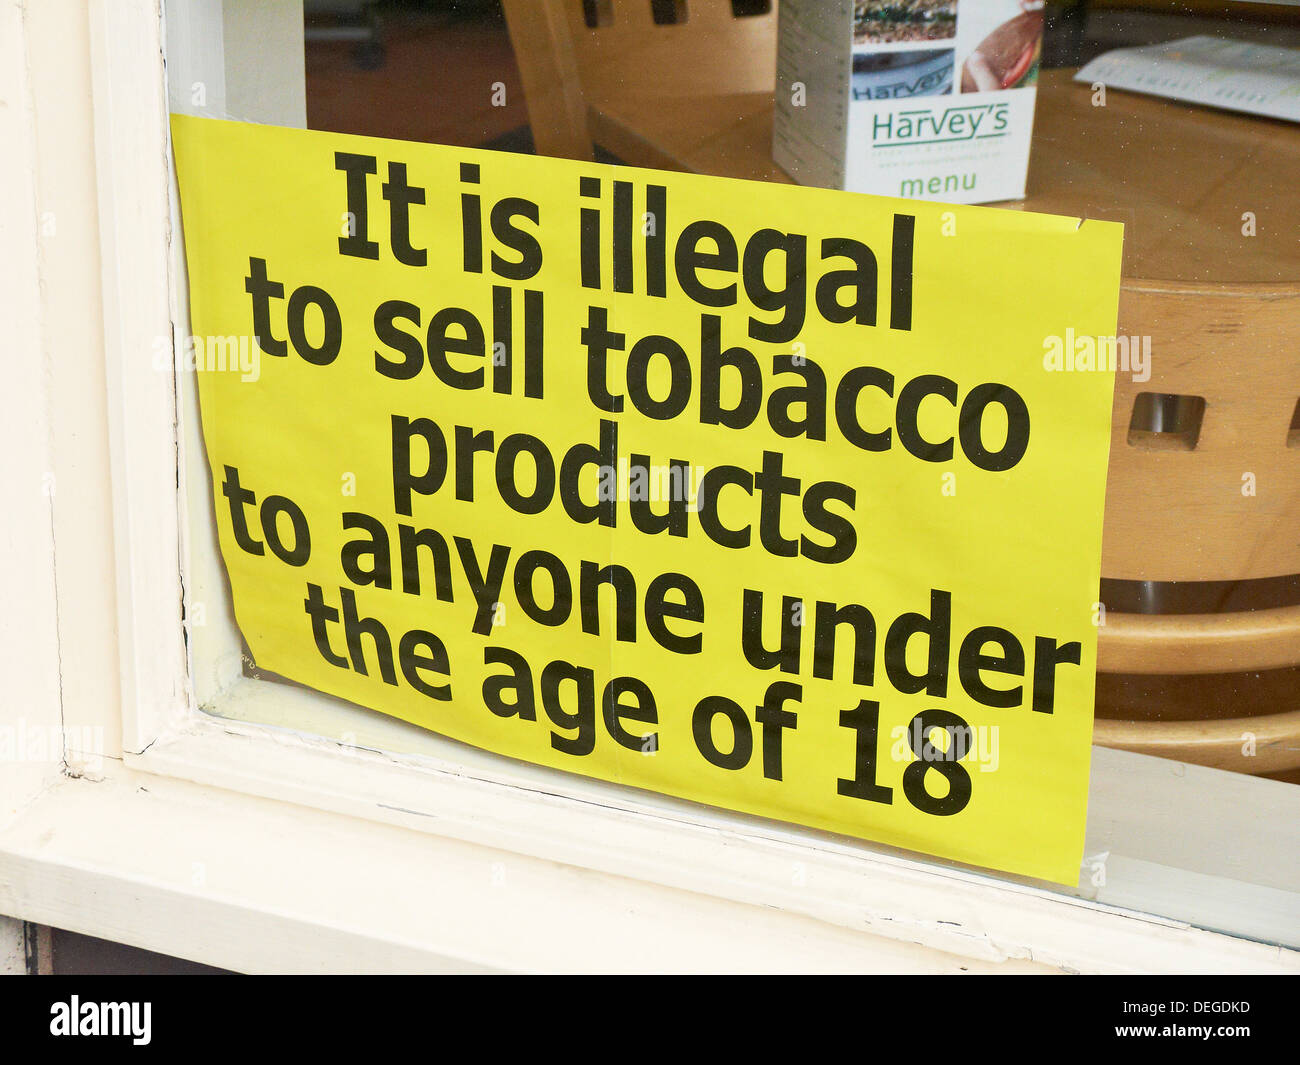 Illégal de vendre du tabac sous 18 sign in shop window uk Banque D'Images